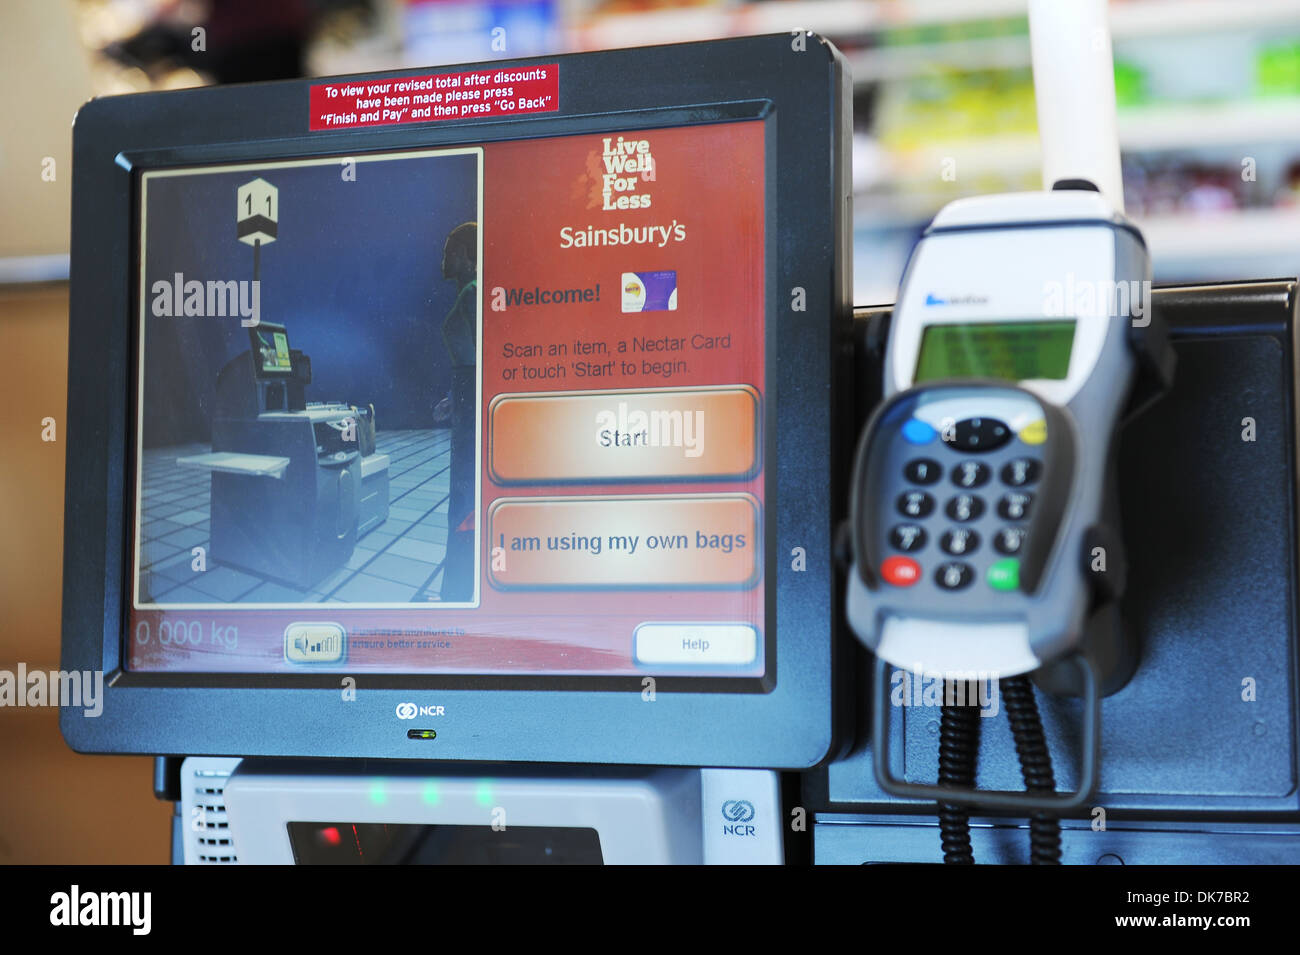 Self-checkout máquina, auto-servicio exprés o semi asistió al cliente Terminal activado (SACAT) Máquina, Sainsbury's, REINO UNIDO Foto de stock